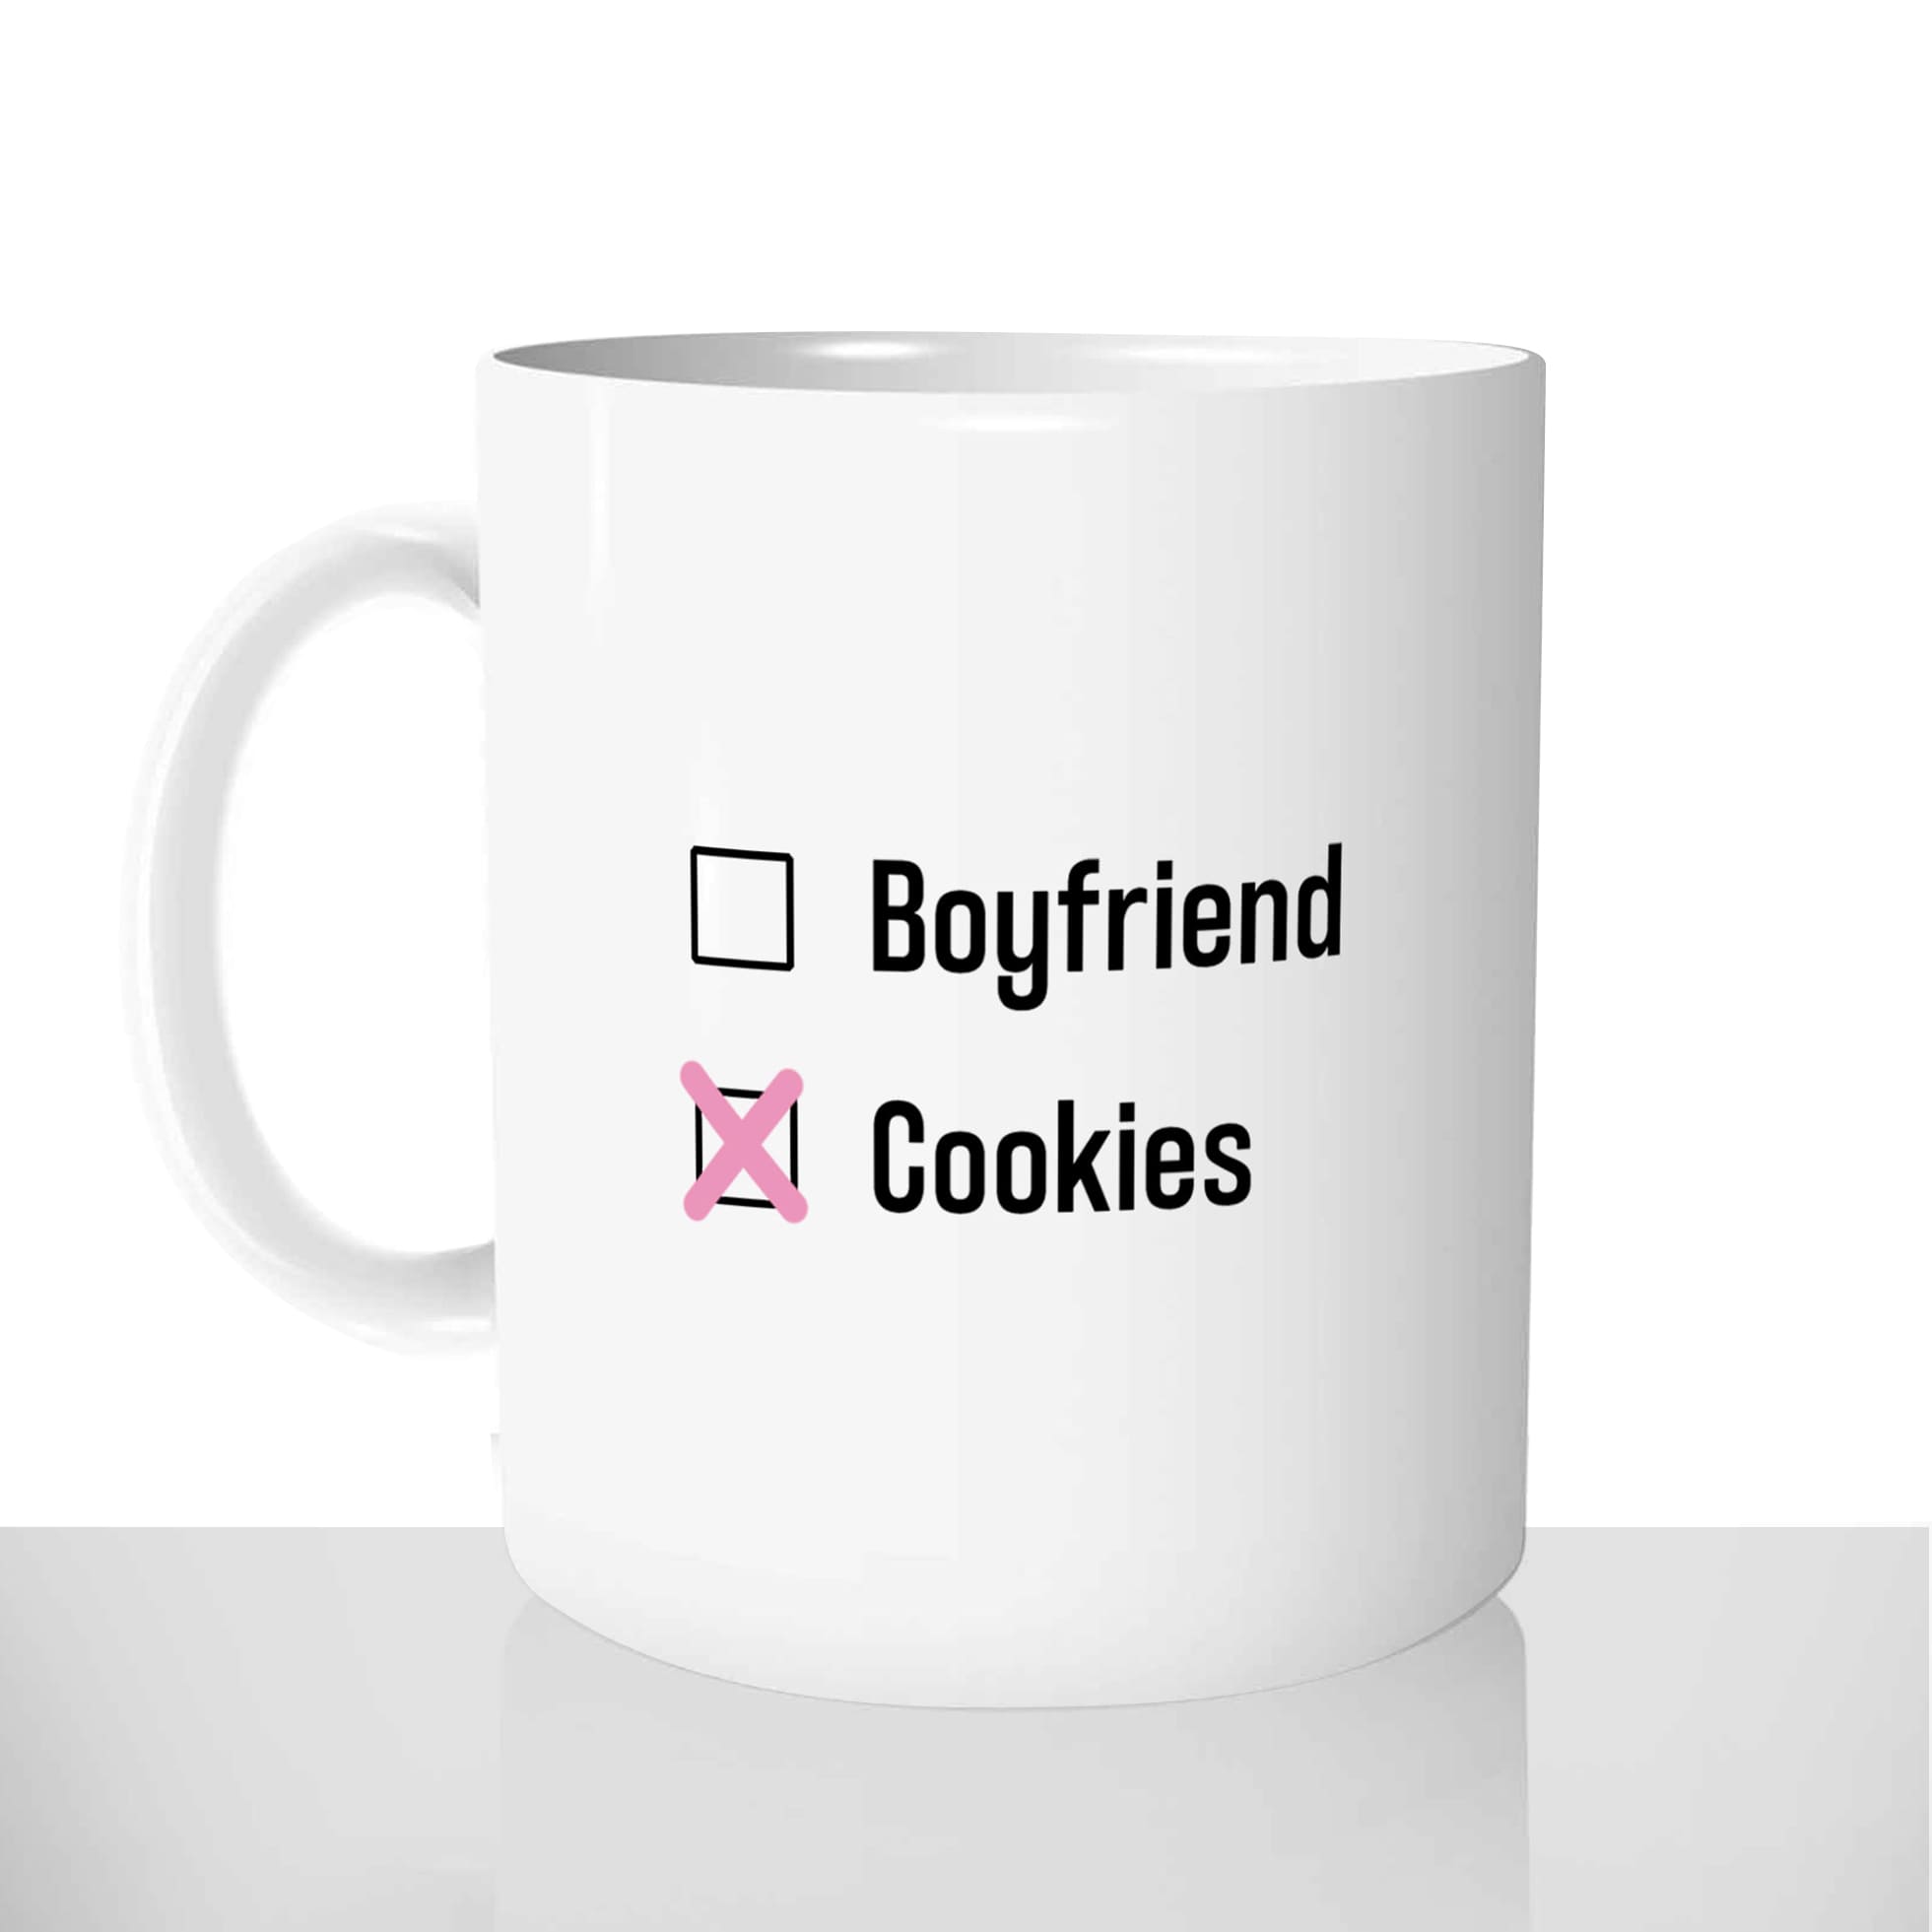 mug classique en céramique 11oz personnalisé personnalisation photo célibataire boyfriend cookies en couple gateau chou offrir cadeau